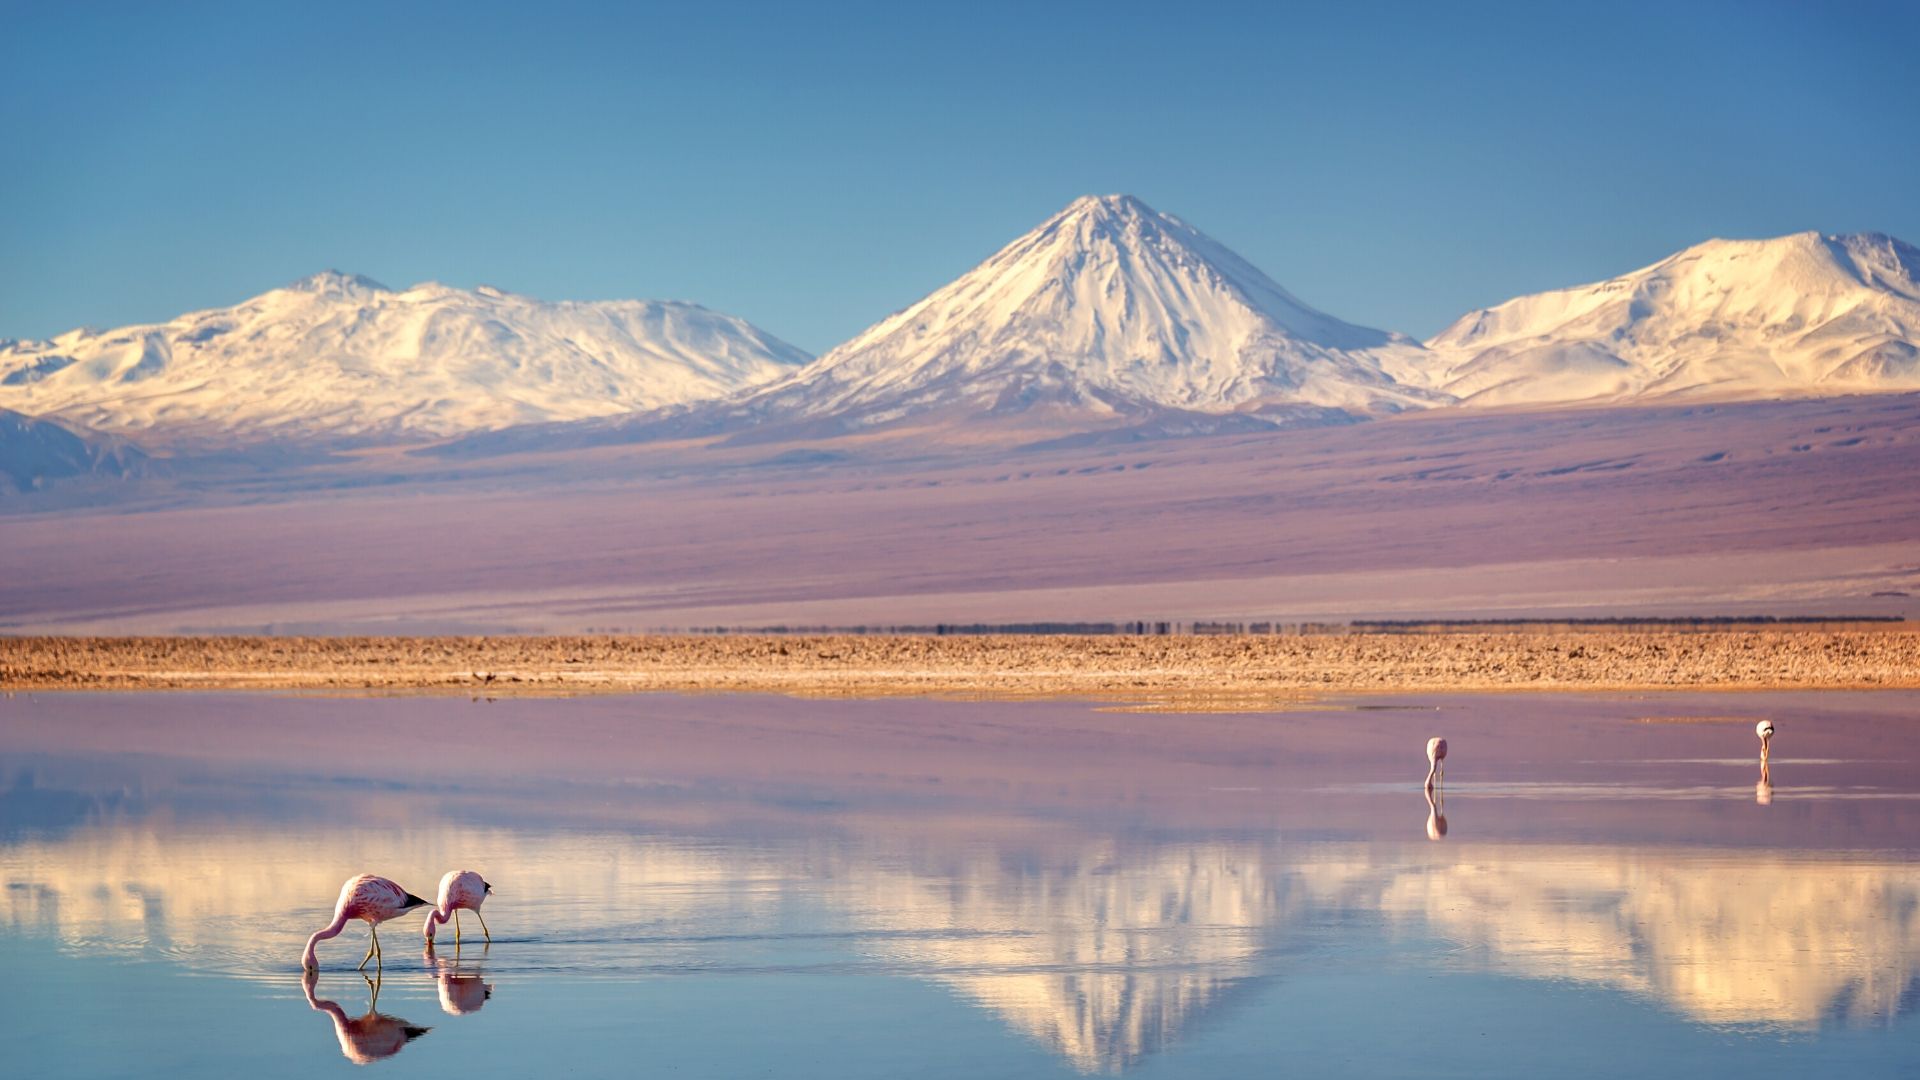 Deserto do Atacama no Chile: o deserto mais árido do mundo